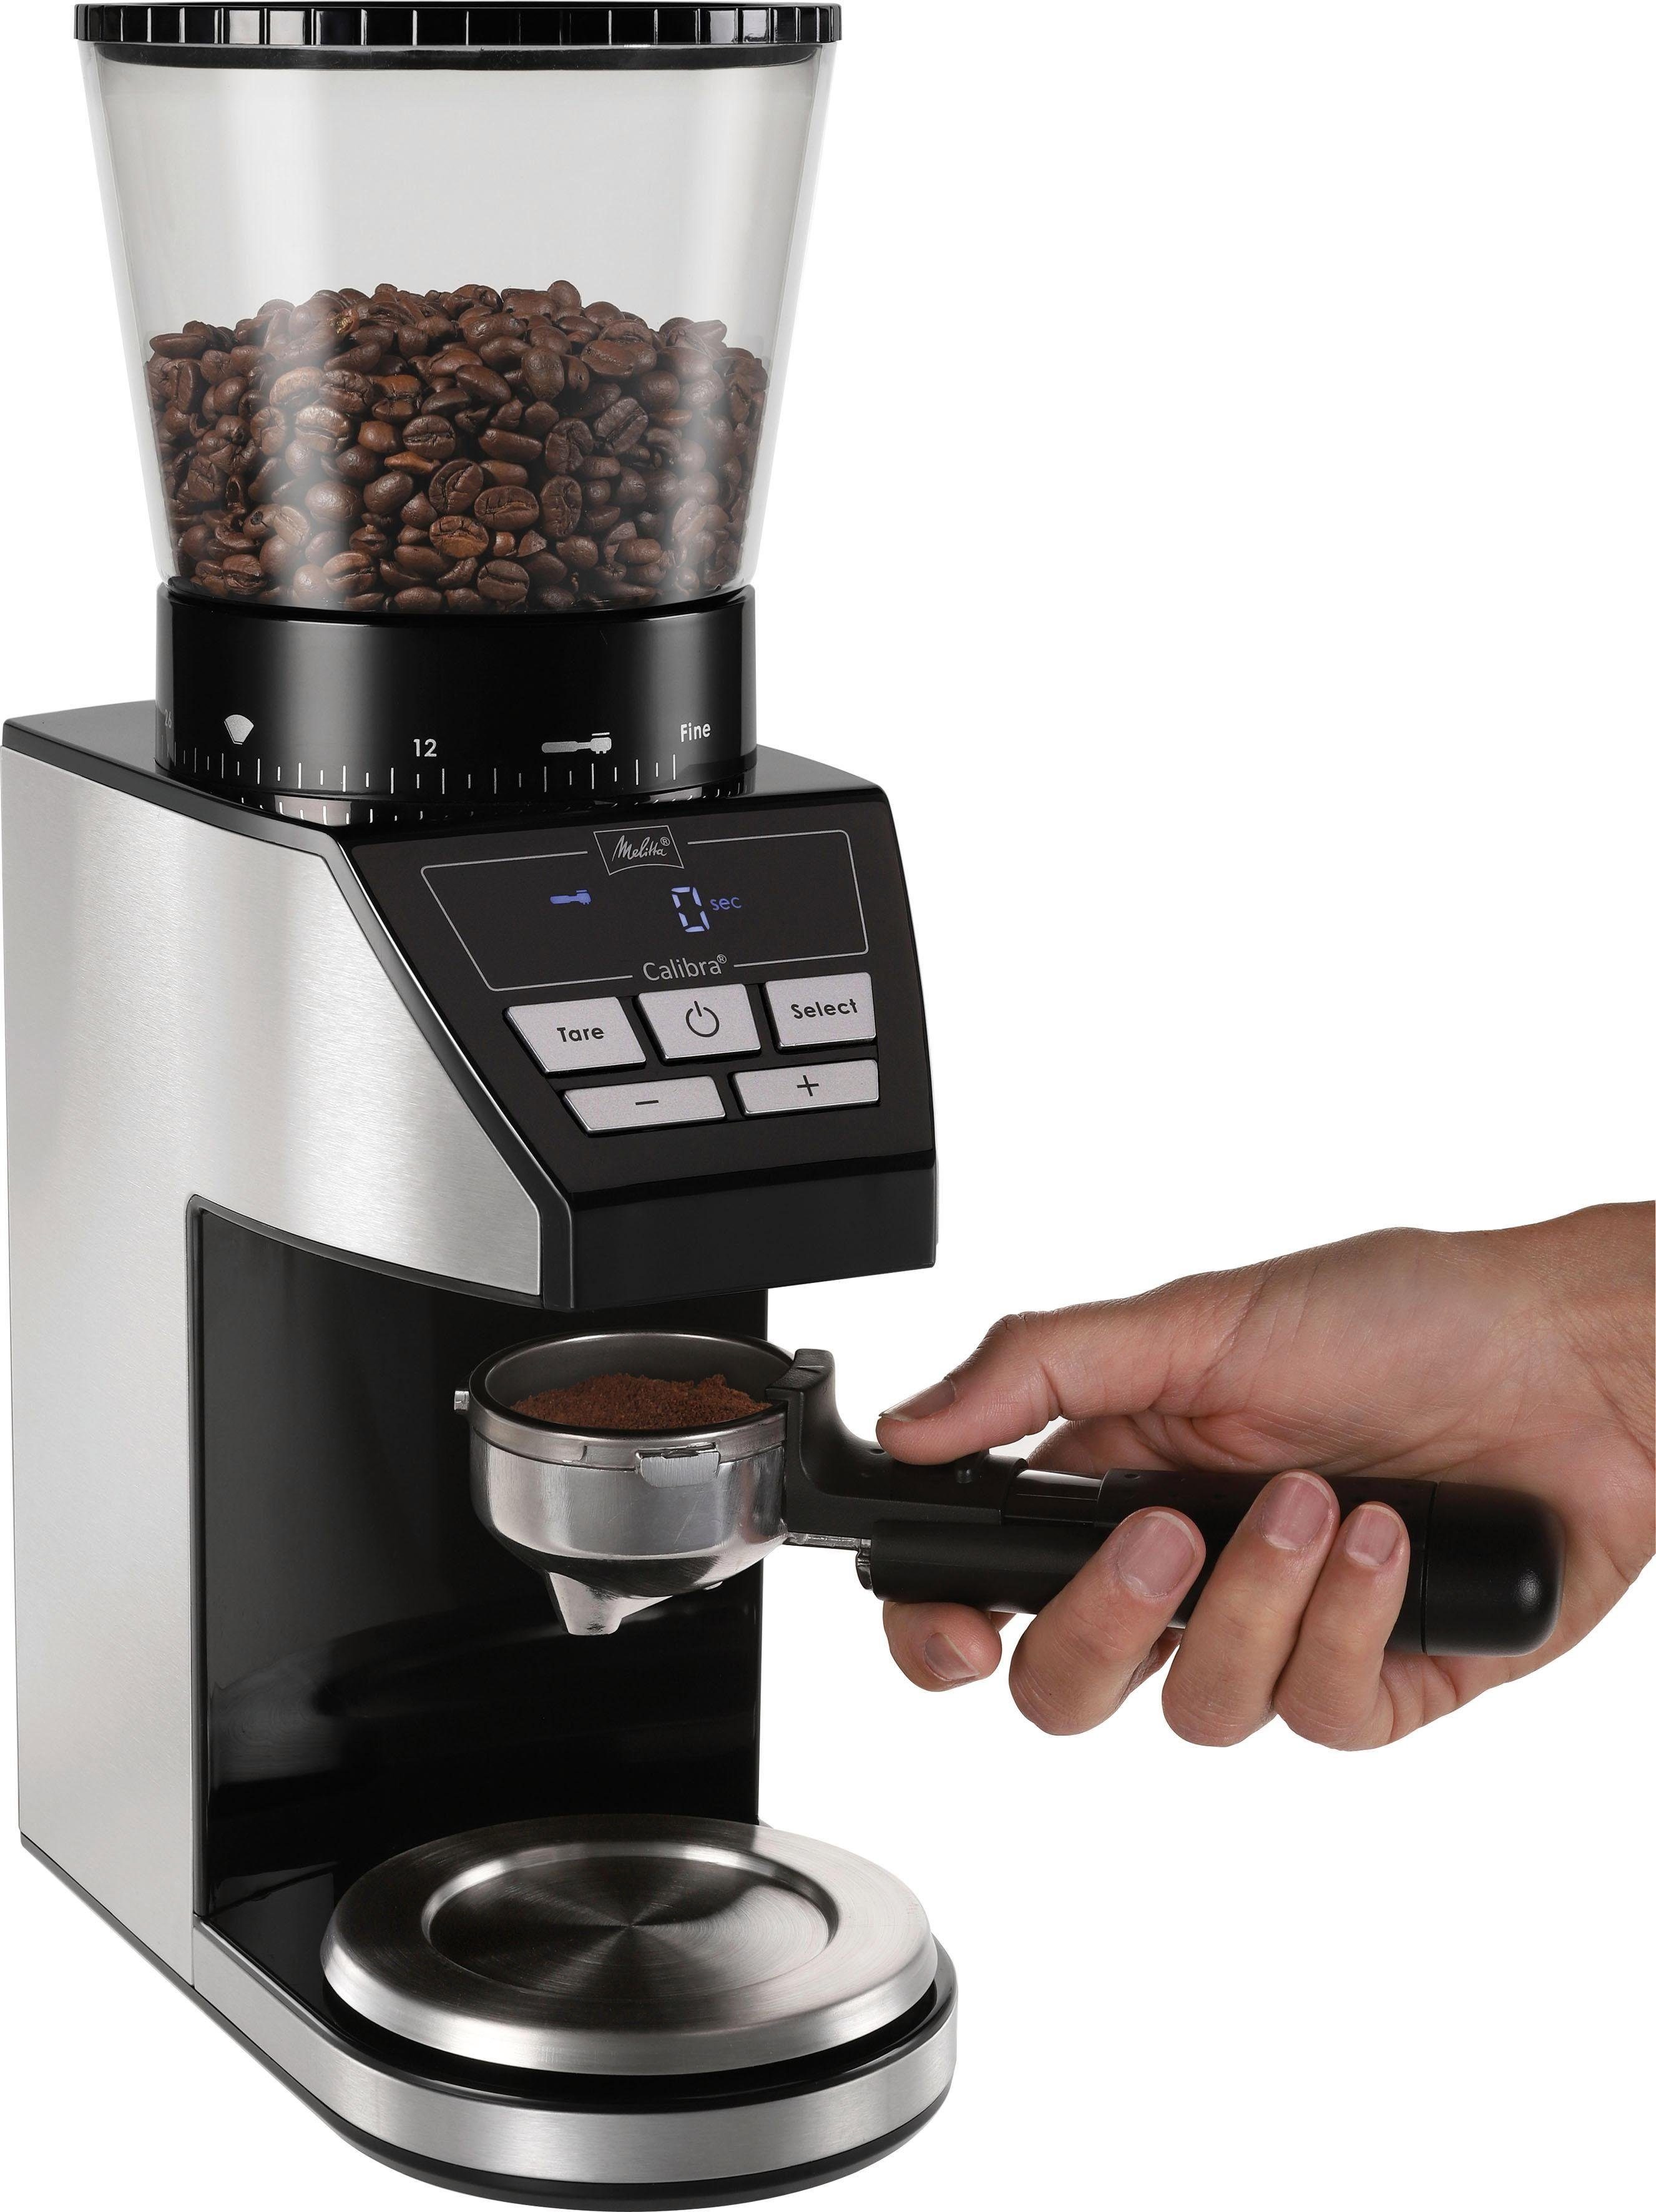 Melitta schwarz-Edelstahl, 160 Calibra g 375 1027-01 W, Bohnenbehälter Kaffeemühle Kegelmahlwerk,